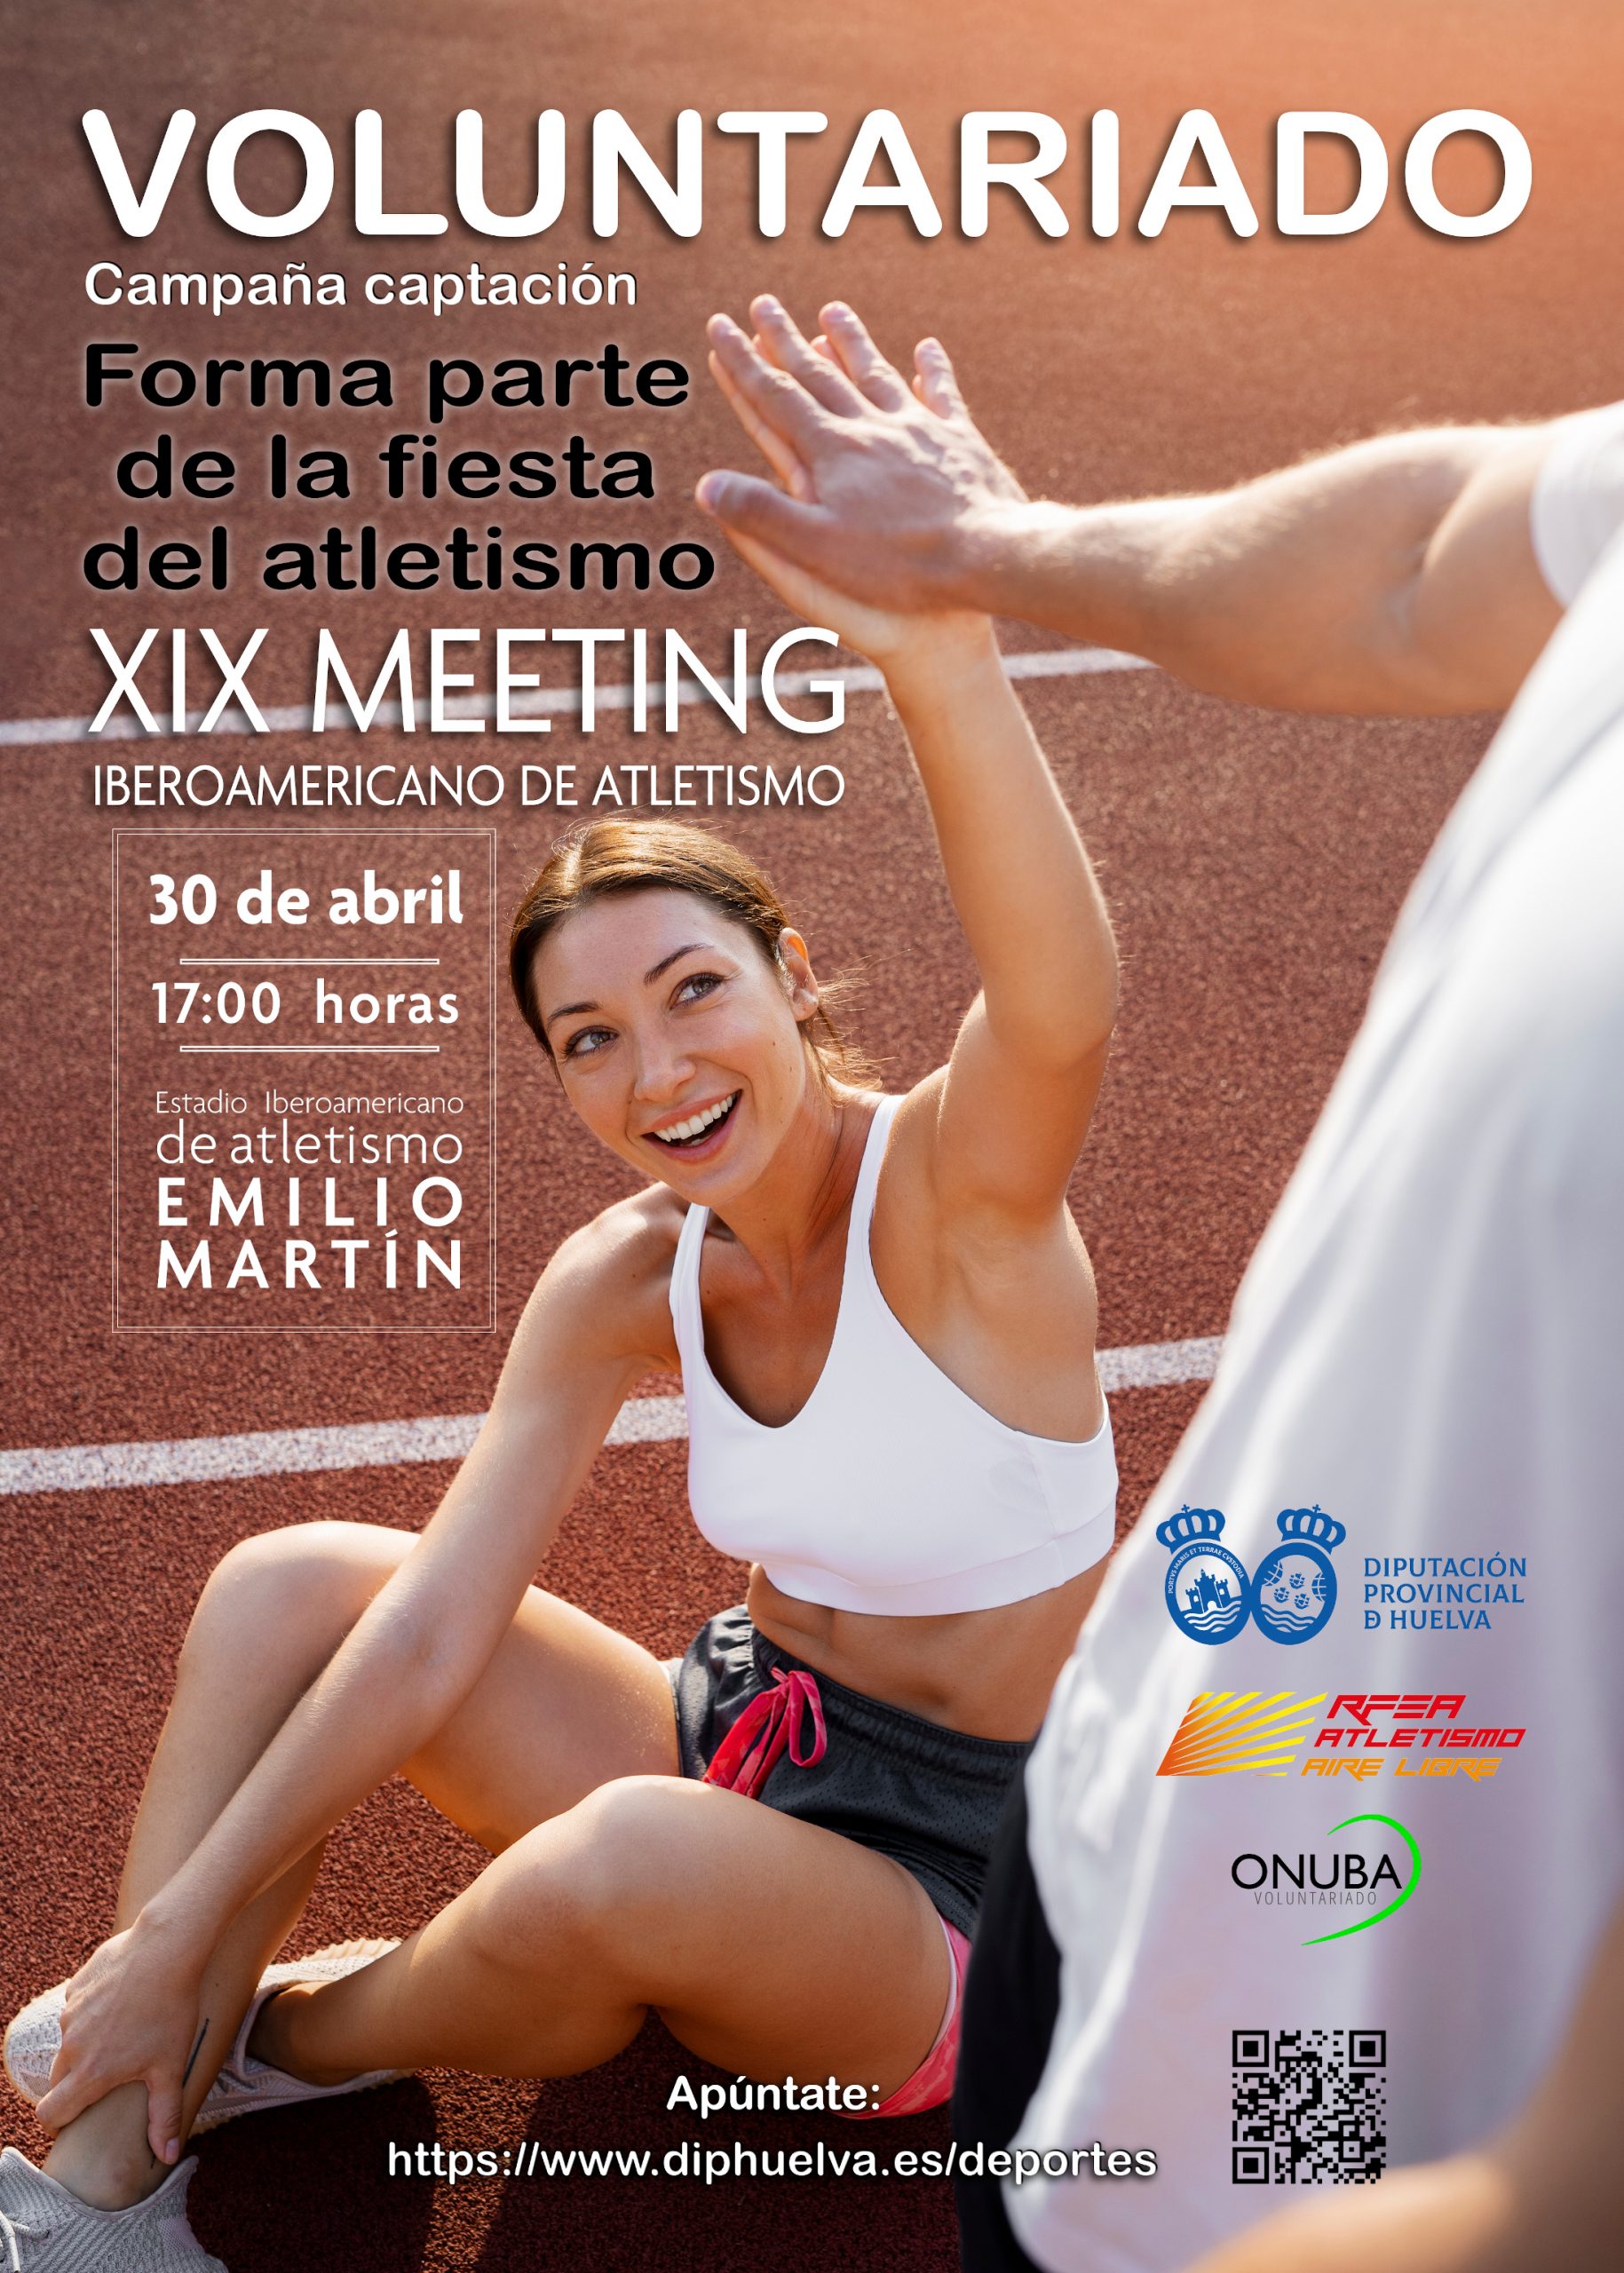 El XIX Meeting Iberoamericano de Atletismo se celebrará el próximo 30 de abril